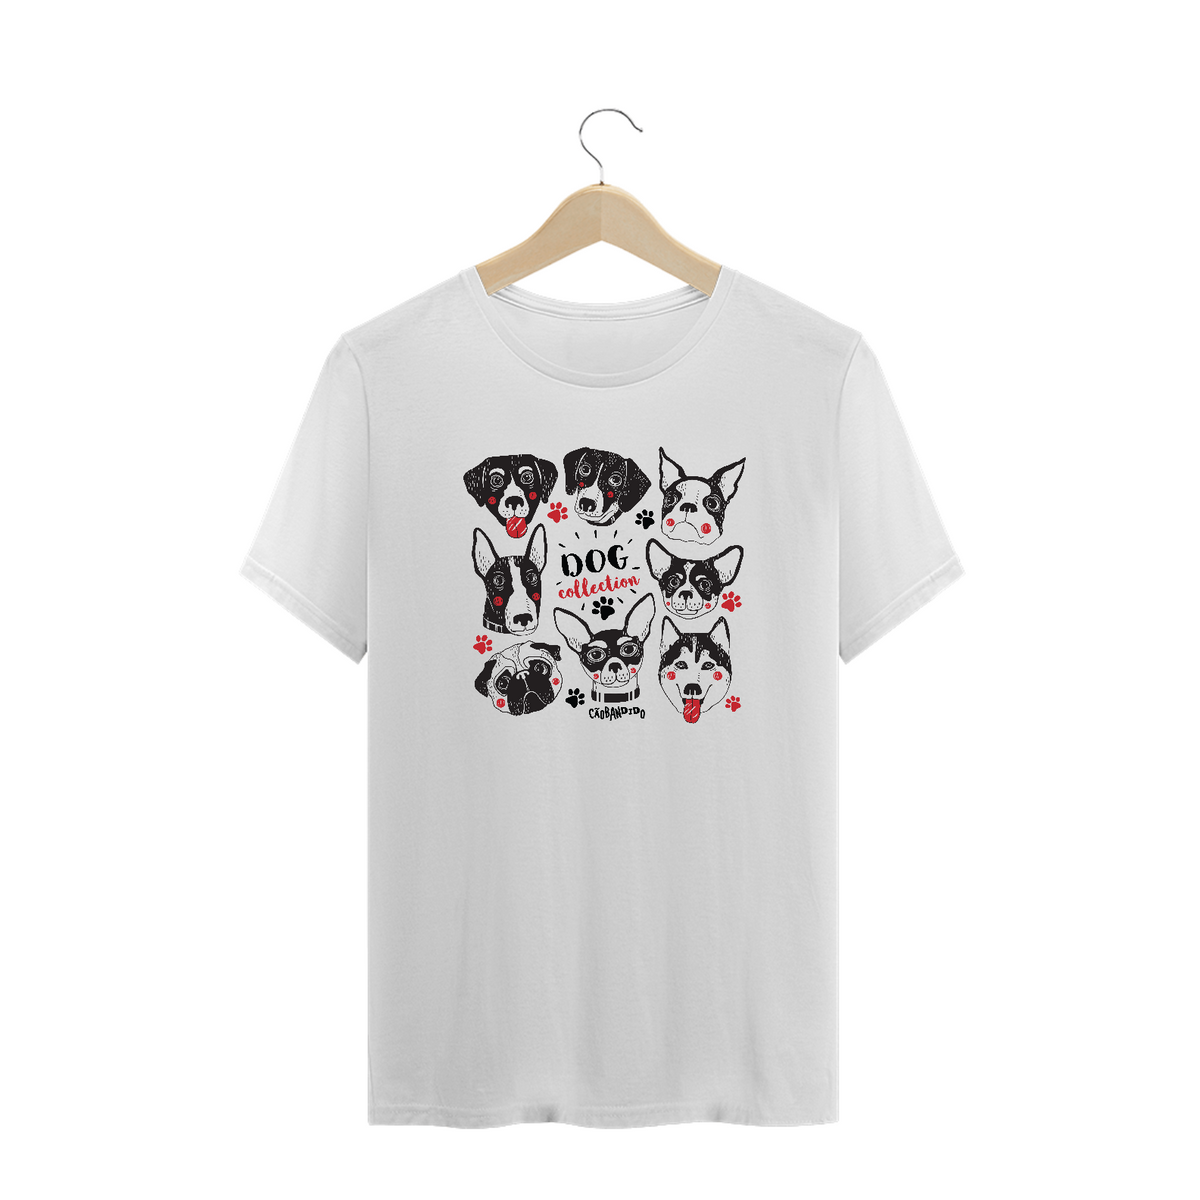 Nome do produto: Camiseta Plus Size Dog Collection